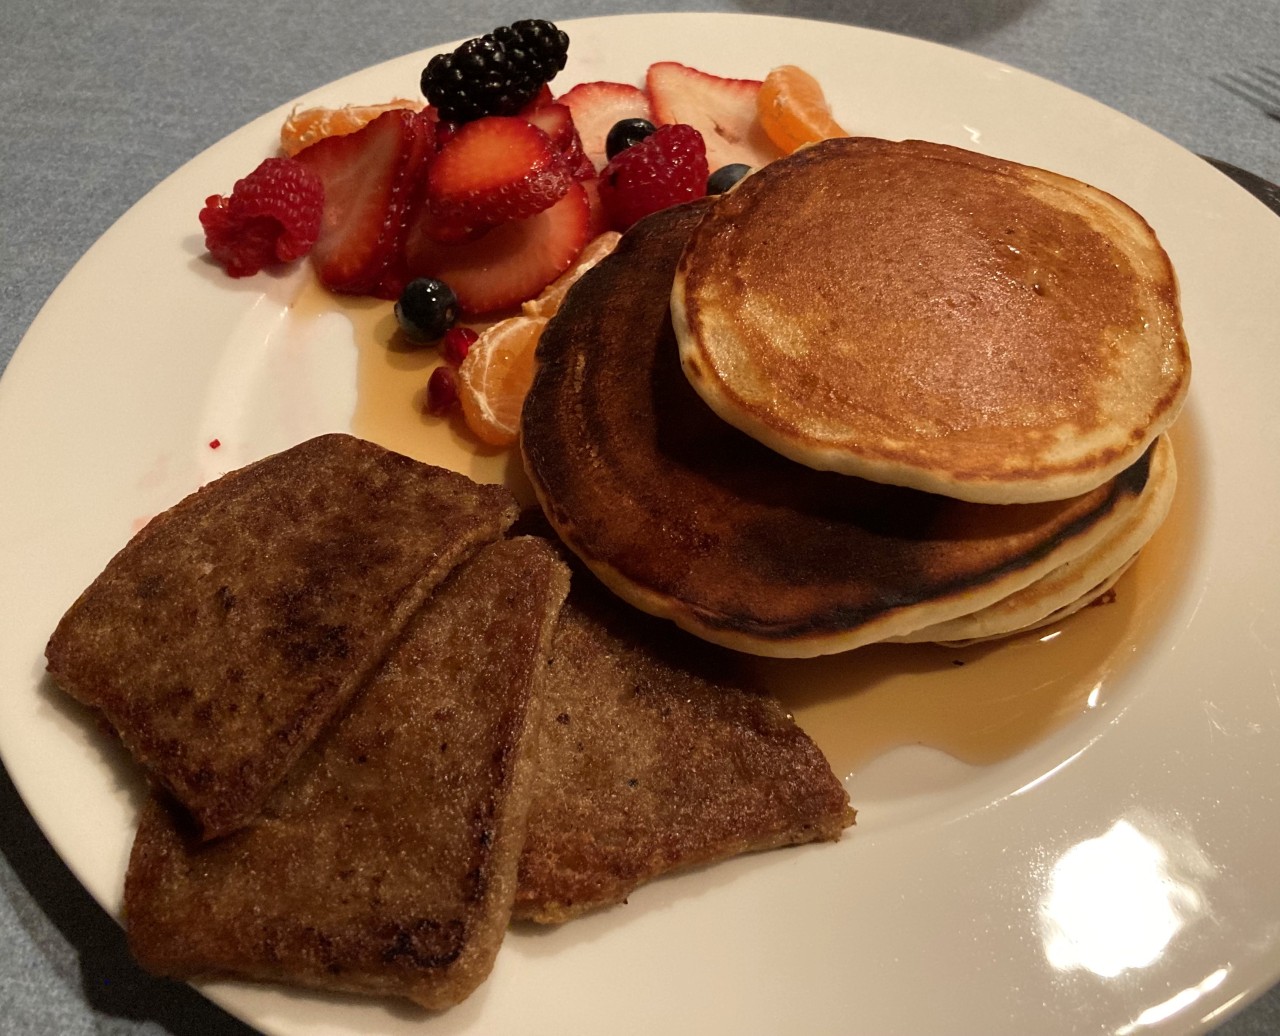 #scrapple#pancakes#fruit #breakfast for dinner #homemade#moms cooking#Pennsylvania#Bucks County